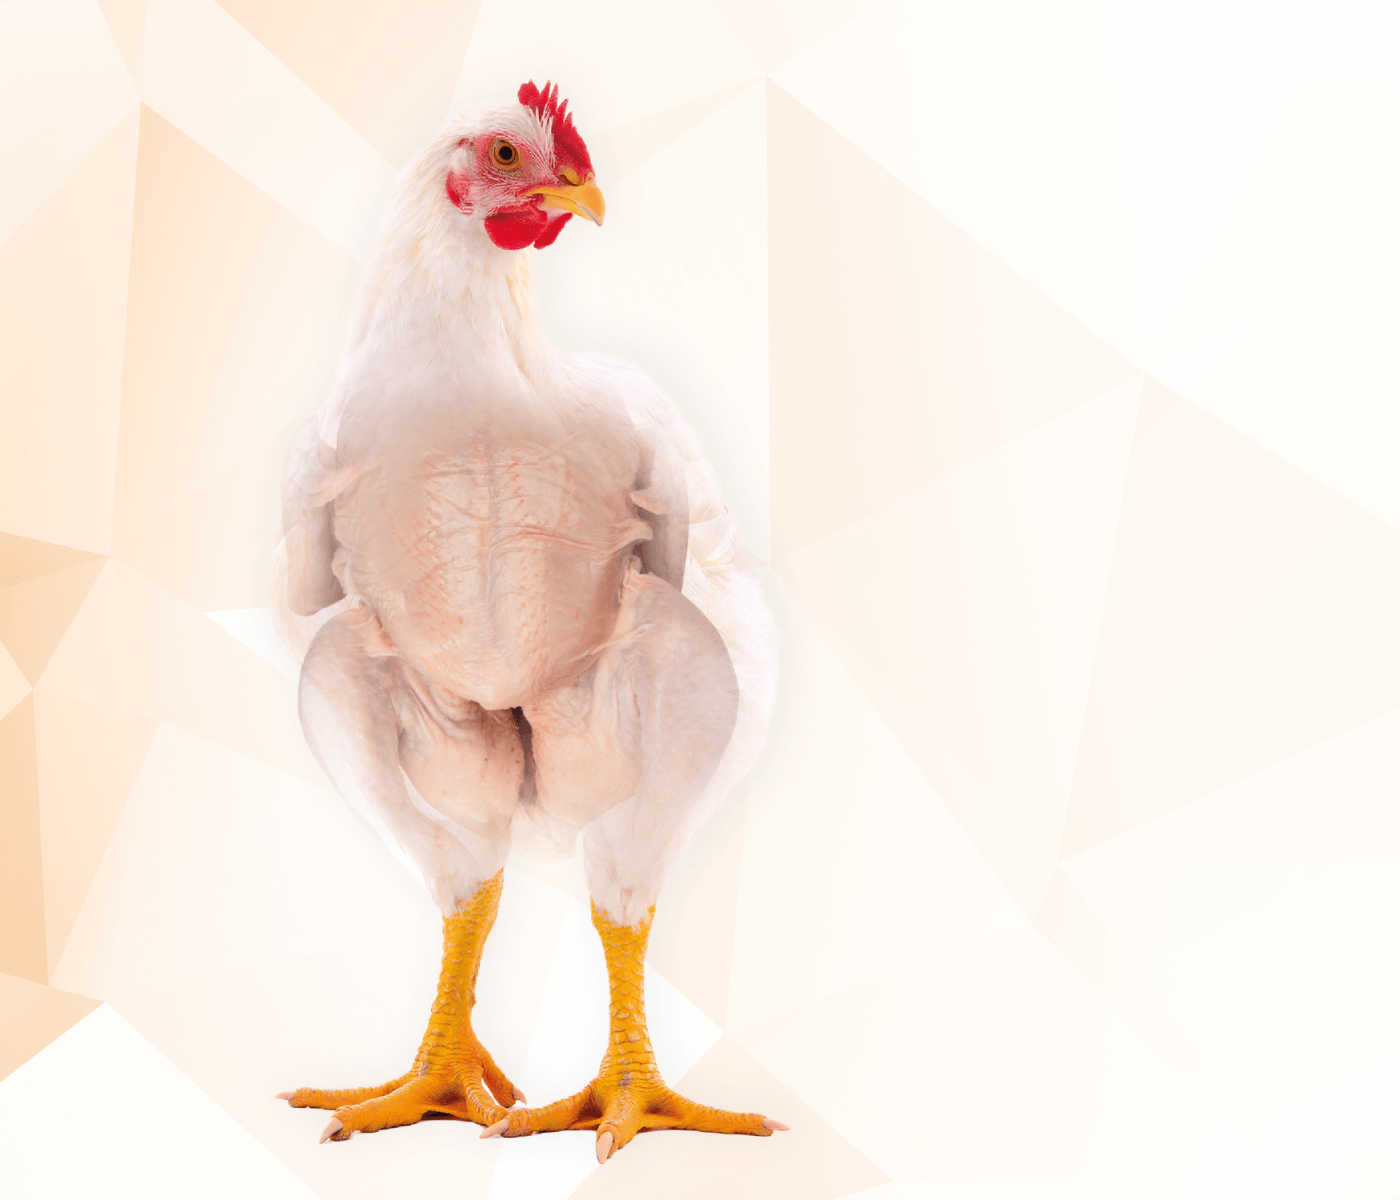 Prevalência de dermatose em frangos de corte e sua relação com o manejo pré-abate